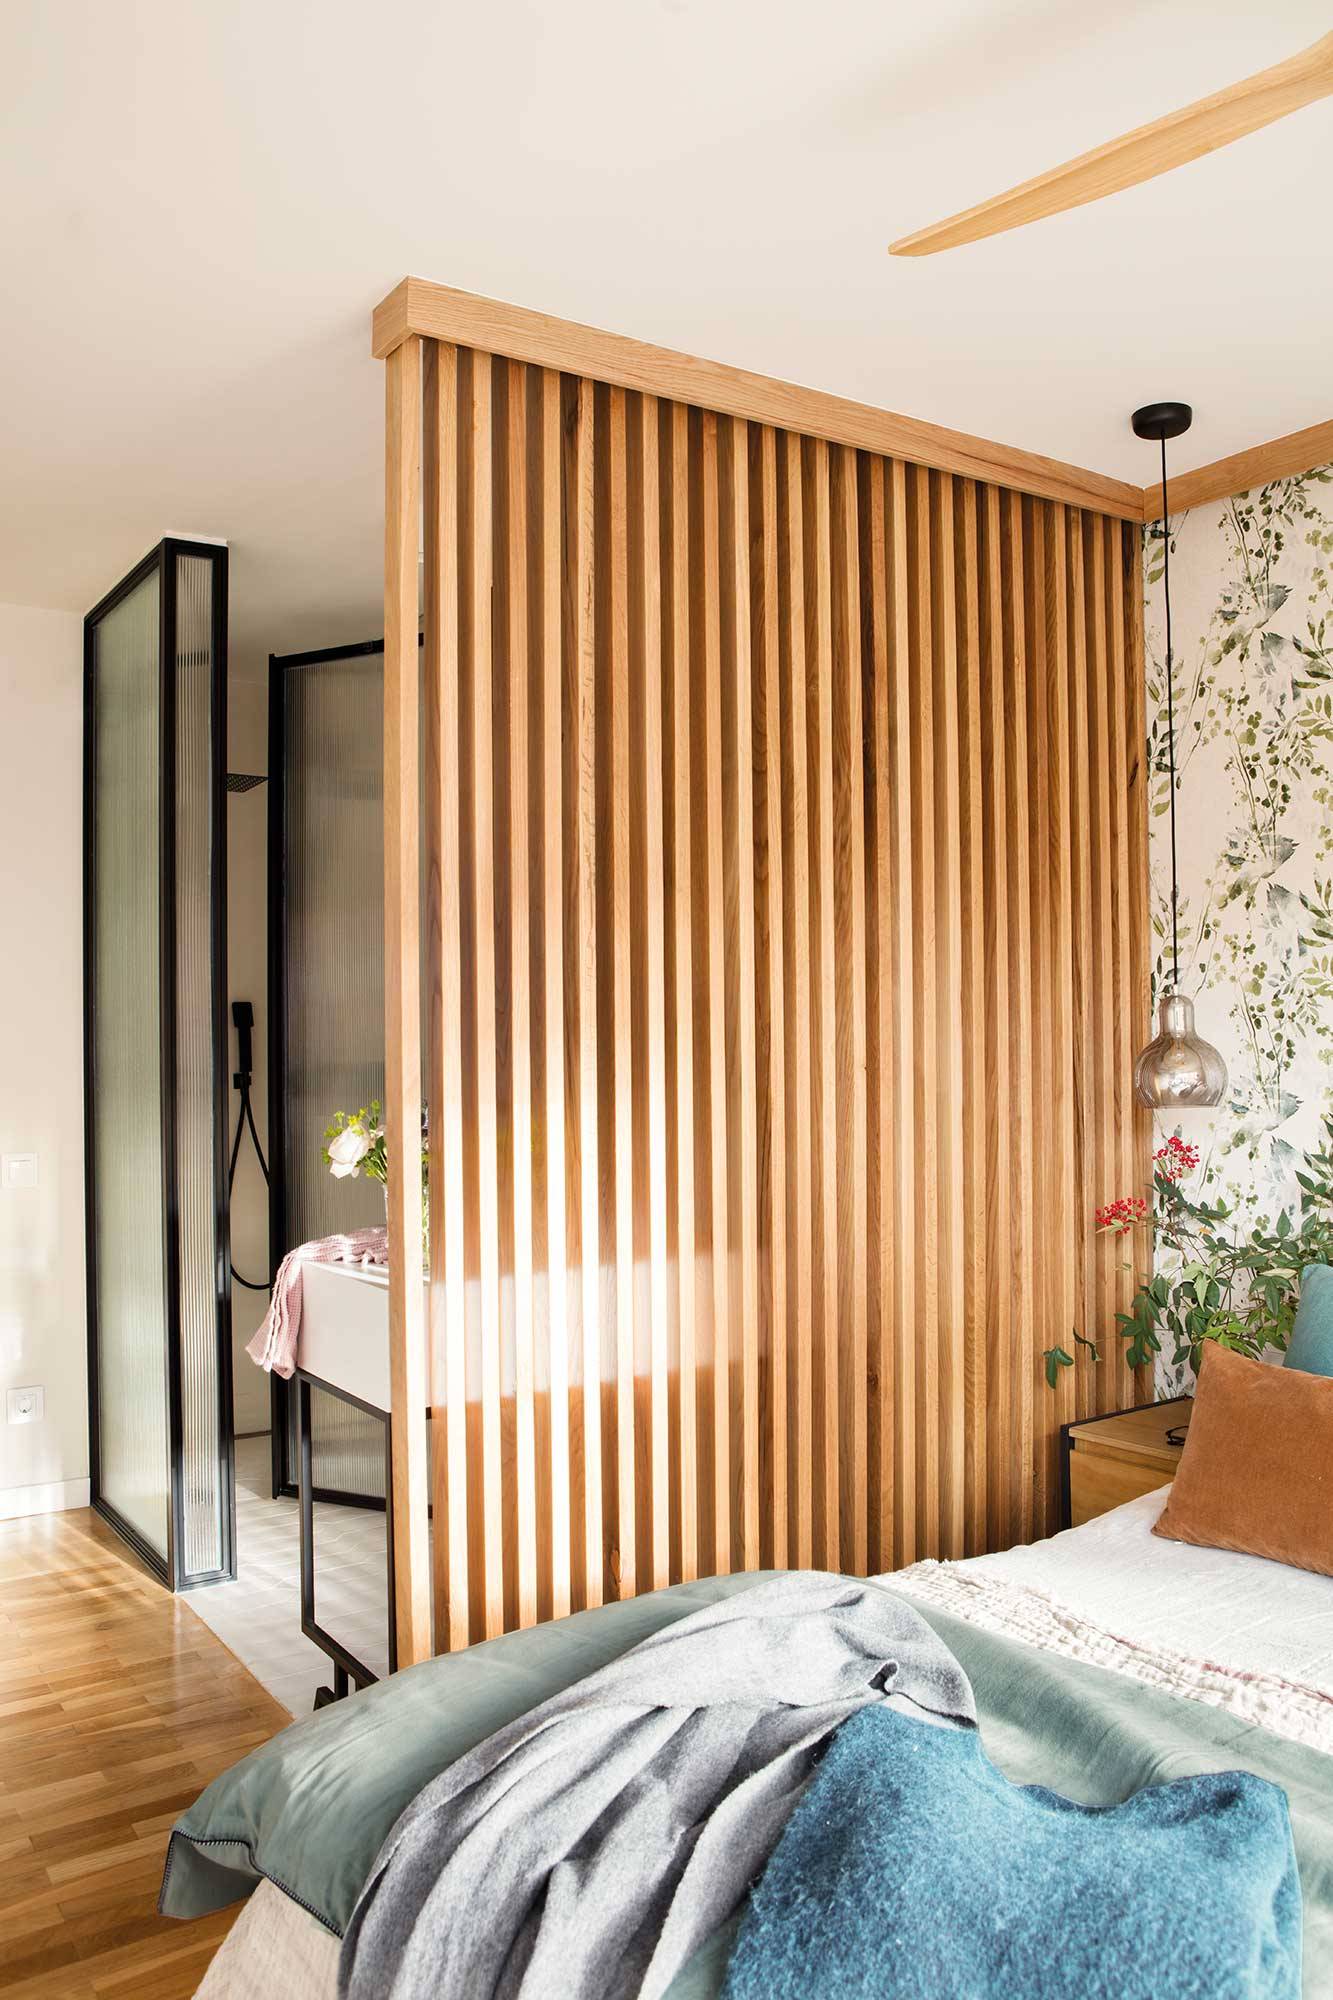 Dormitorio con celosía de madera que separa dormitorio y baño